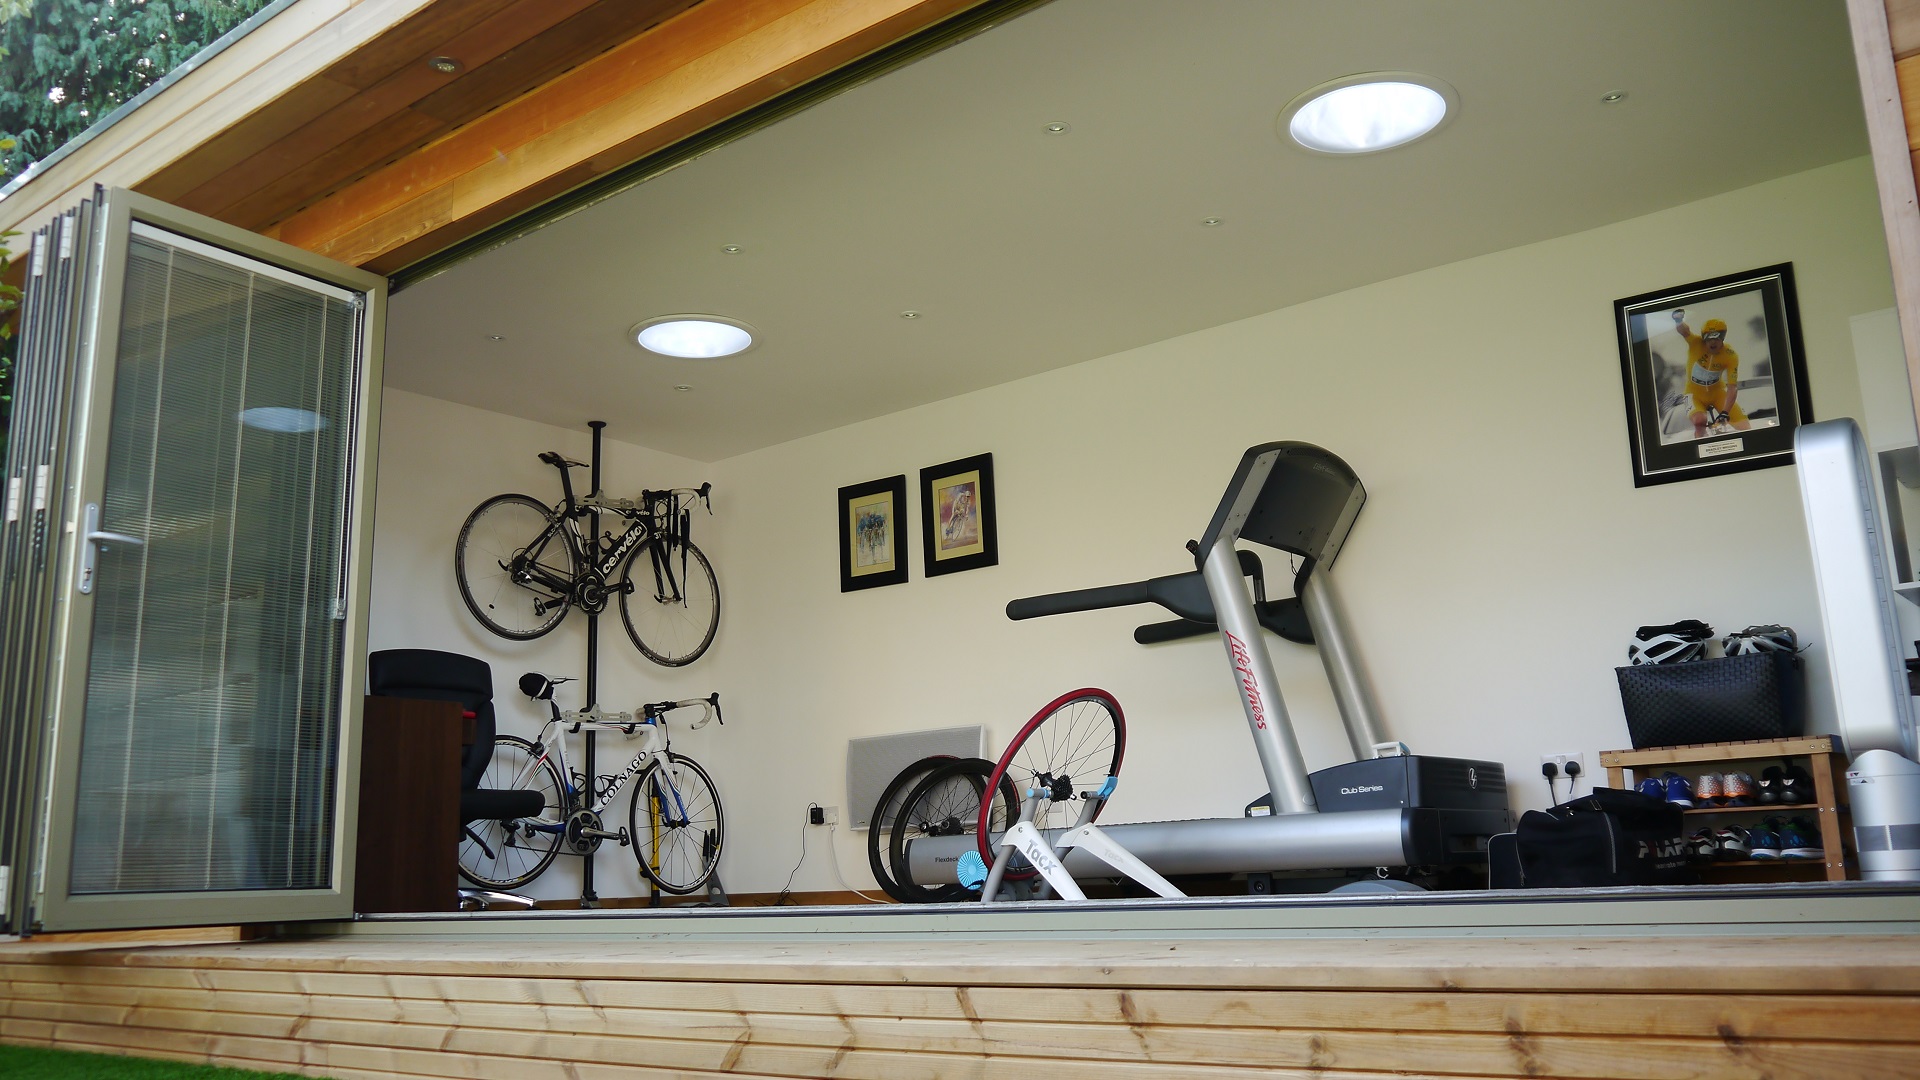 A lakásban kiváló edzőszobát lehet kialakítani. Lehet benne szobabicikli, futópad, taposógép vagy elliptikus tréner